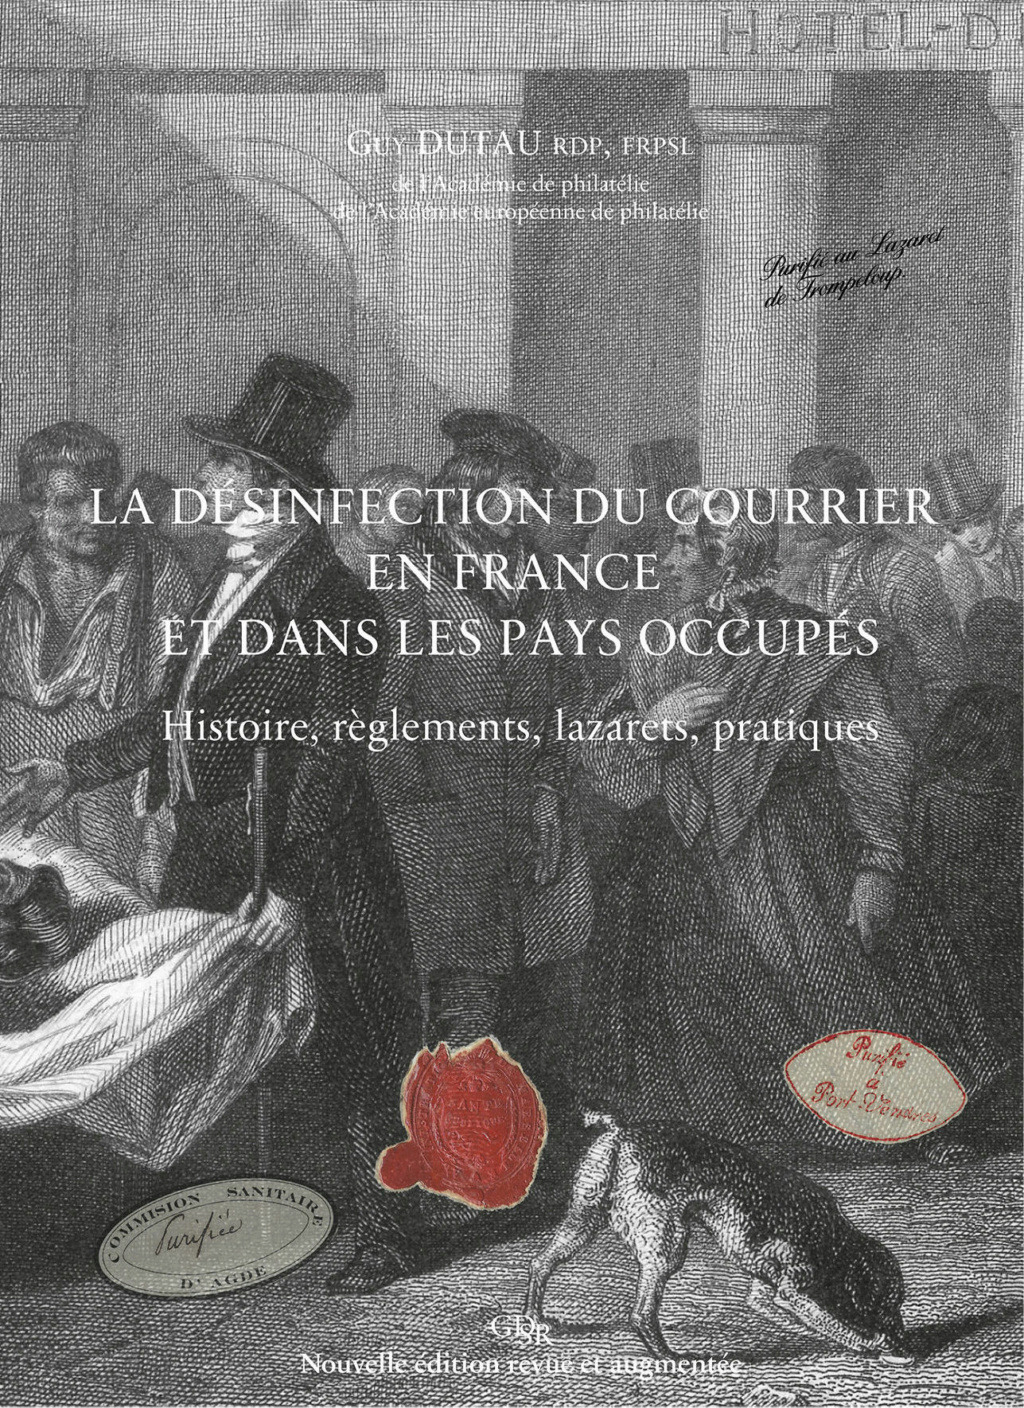 "La désinfection du courrier en France", 2° édition Nlle_z11